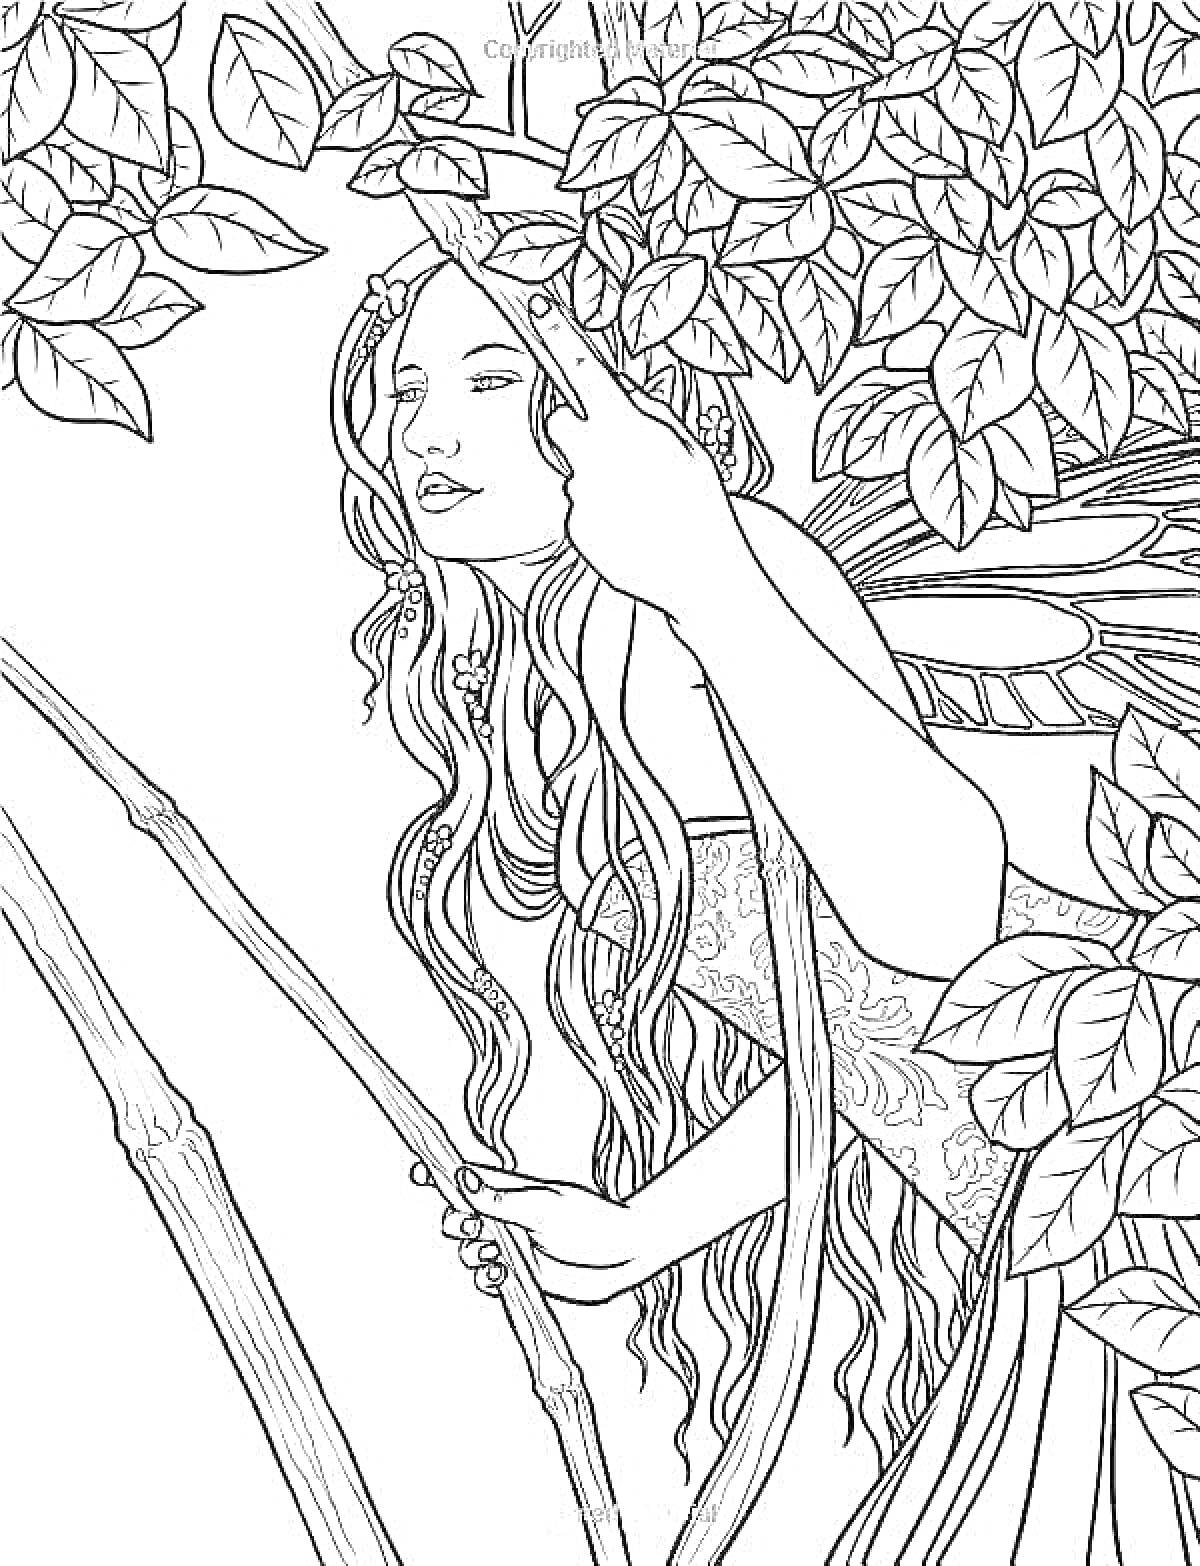 Раскраска Девушка весна среди ветвей и листьев, с длинными волосами и крыльями, в платье с узором